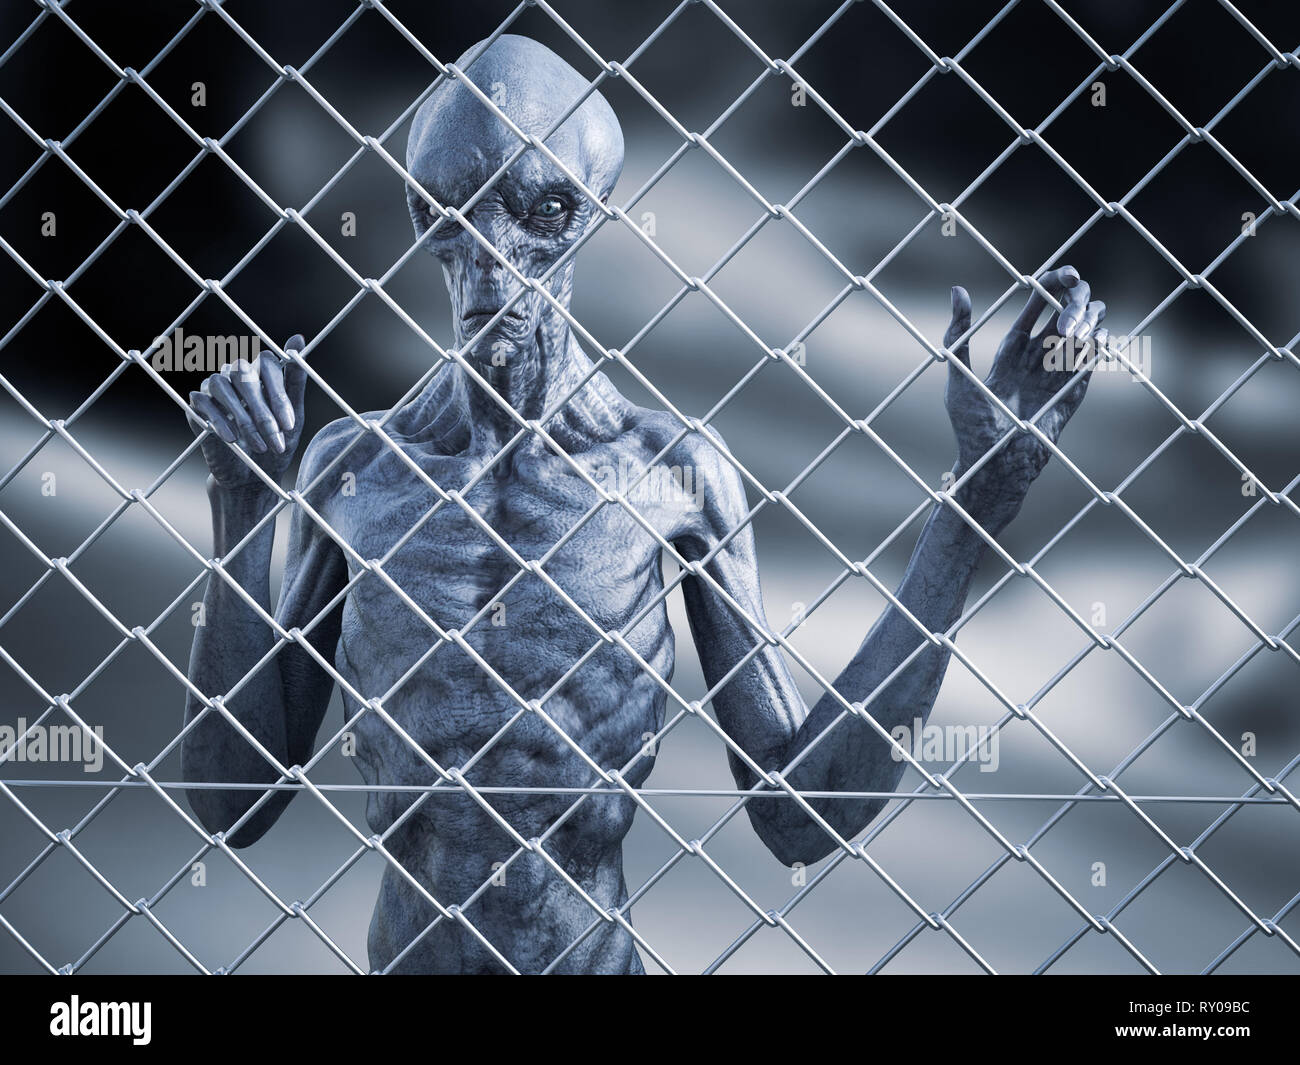 Le rendu 3D d'un étranger créature debout piégés derrière une clôture métallique en acier fil, vous regarde. Banque D'Images